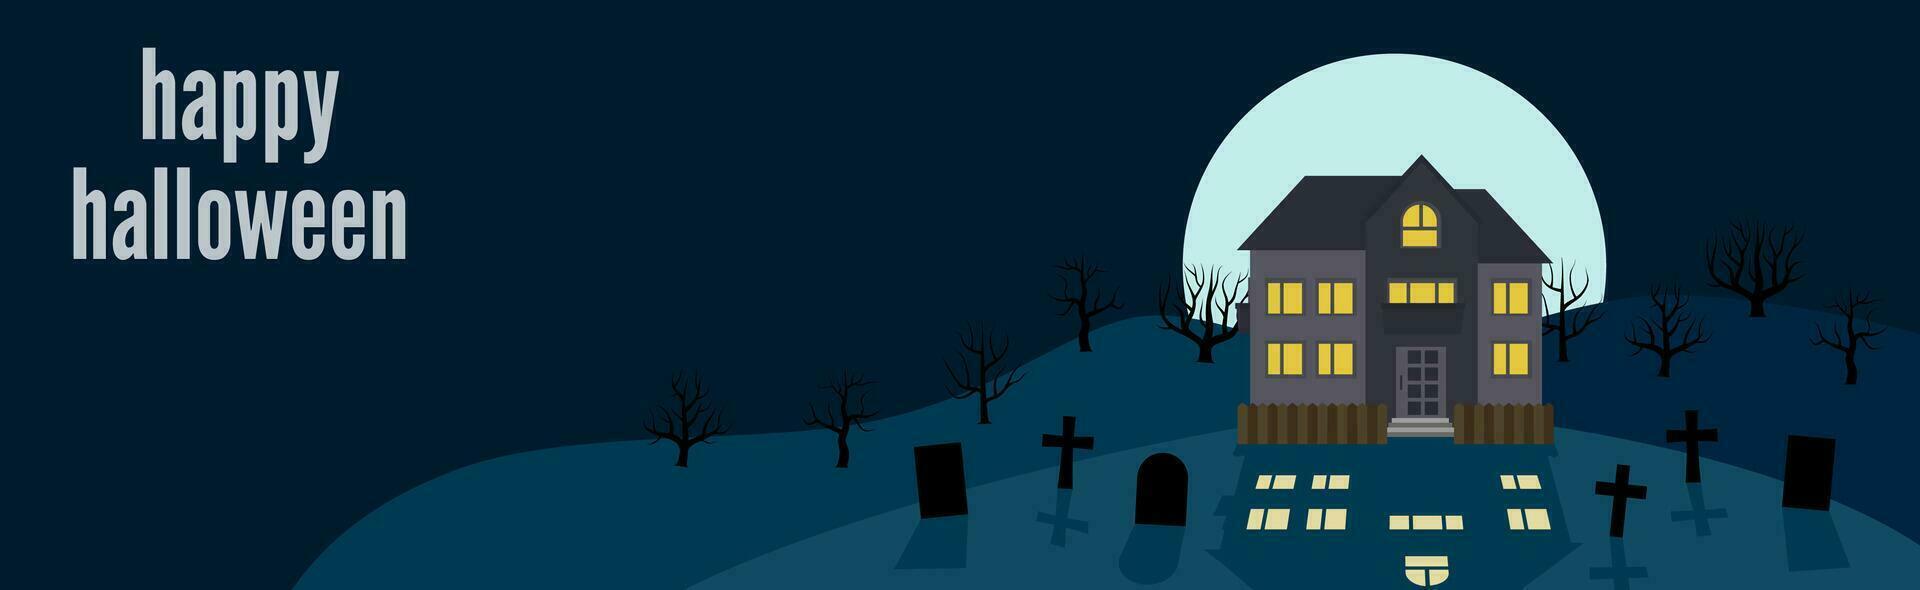 Lycklig halloween. festlig baner med en ensam hus på en bakgrund av de full måne på natt. vektor illustration.